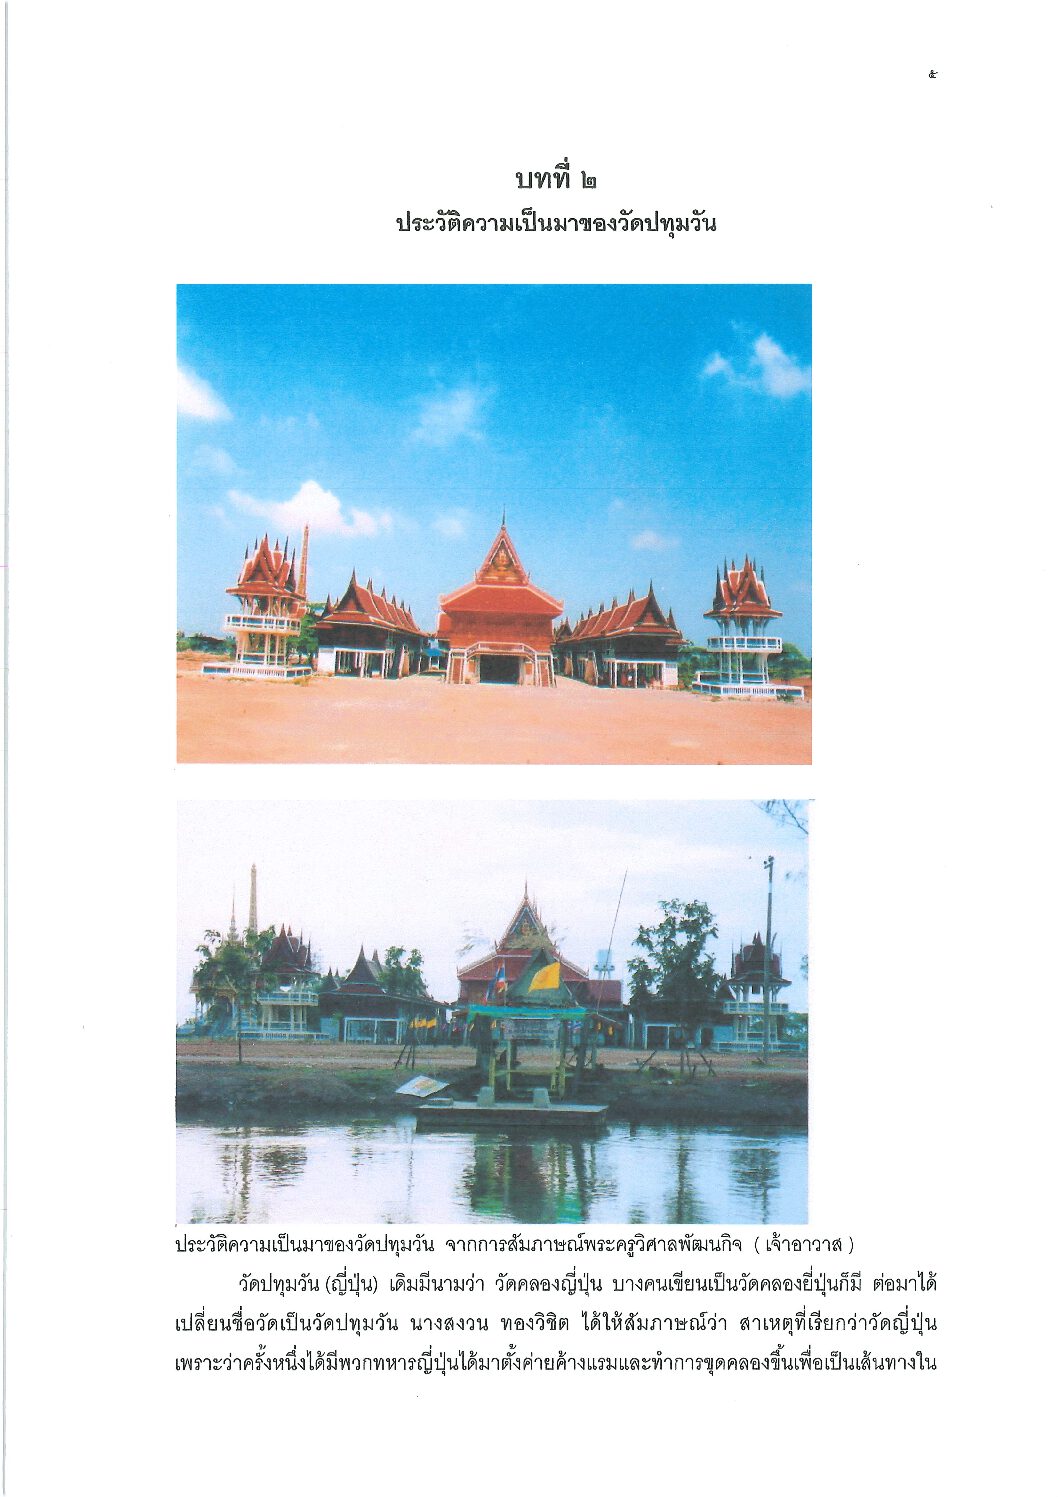 Wat Pathumwan history